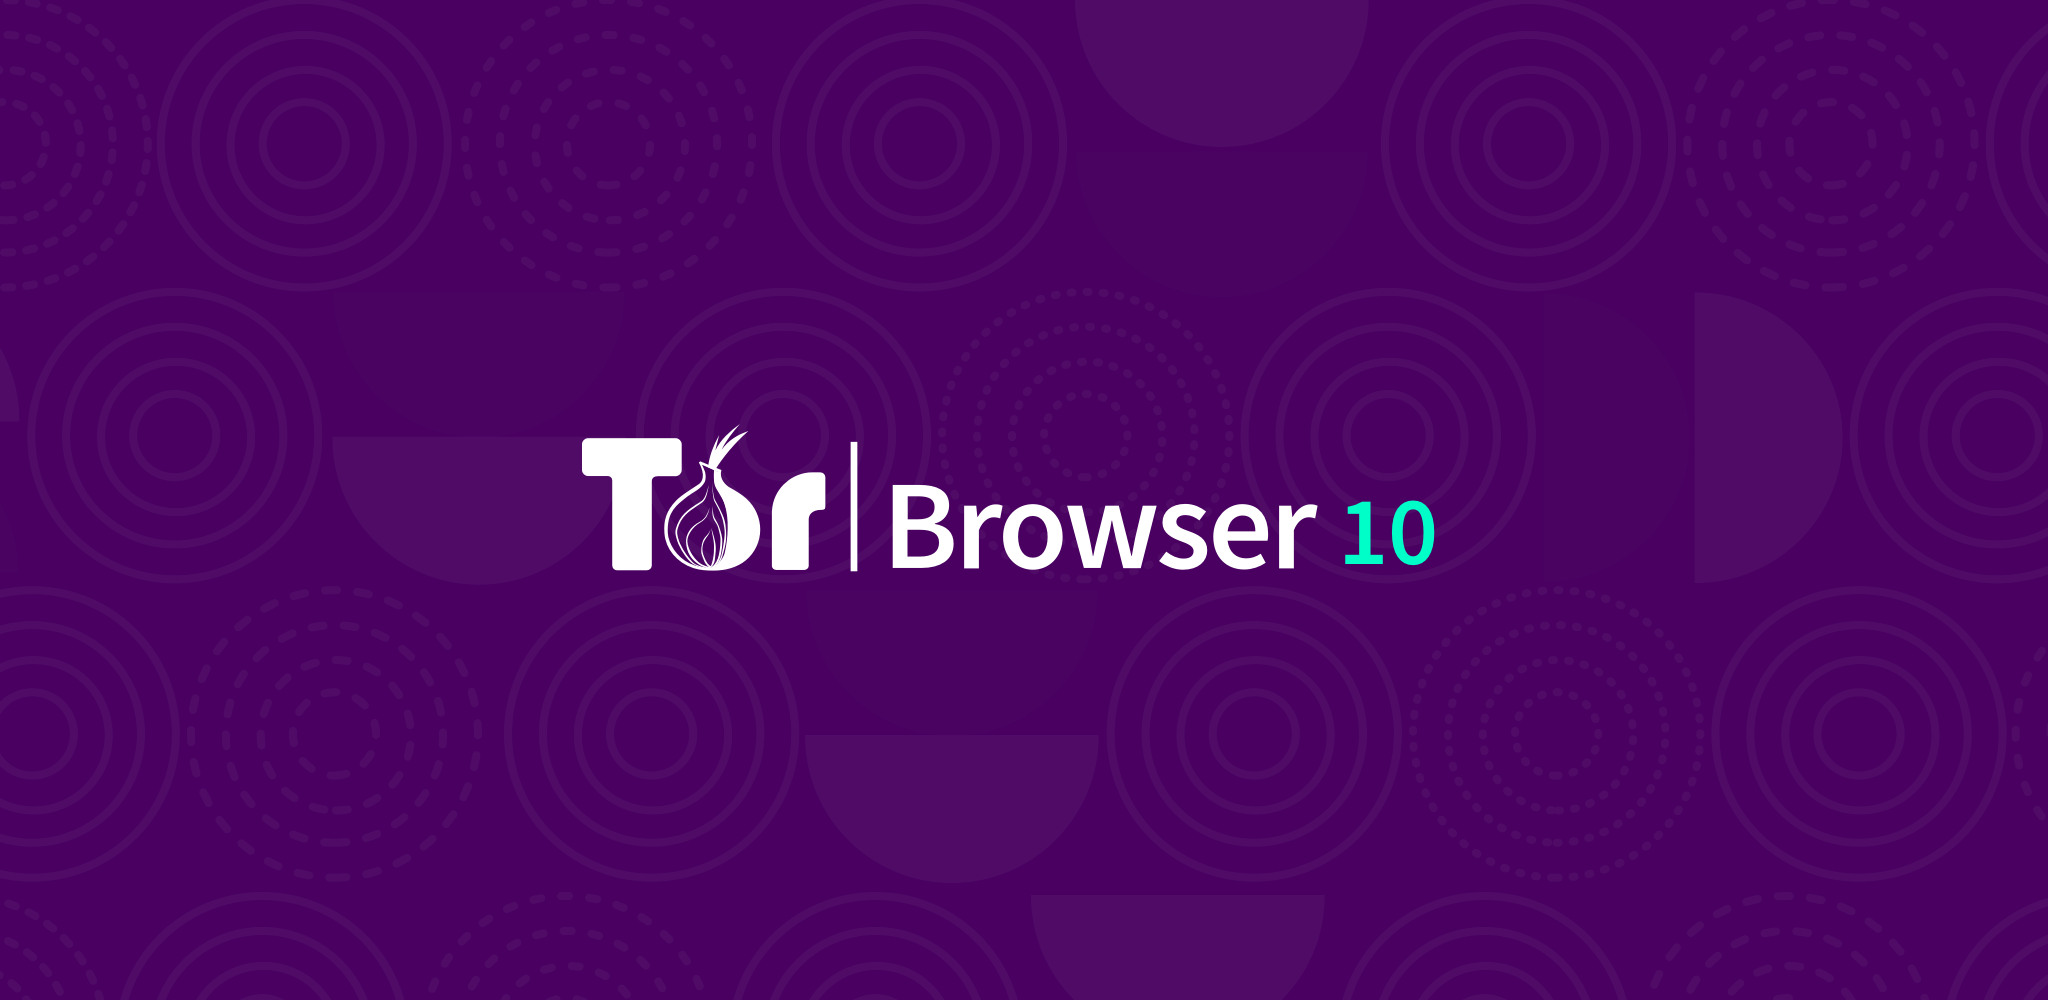 Скачать tor browser for windows mega установить тор браузер на андроид бесплатно с официального сайта megaruzxpnew4af